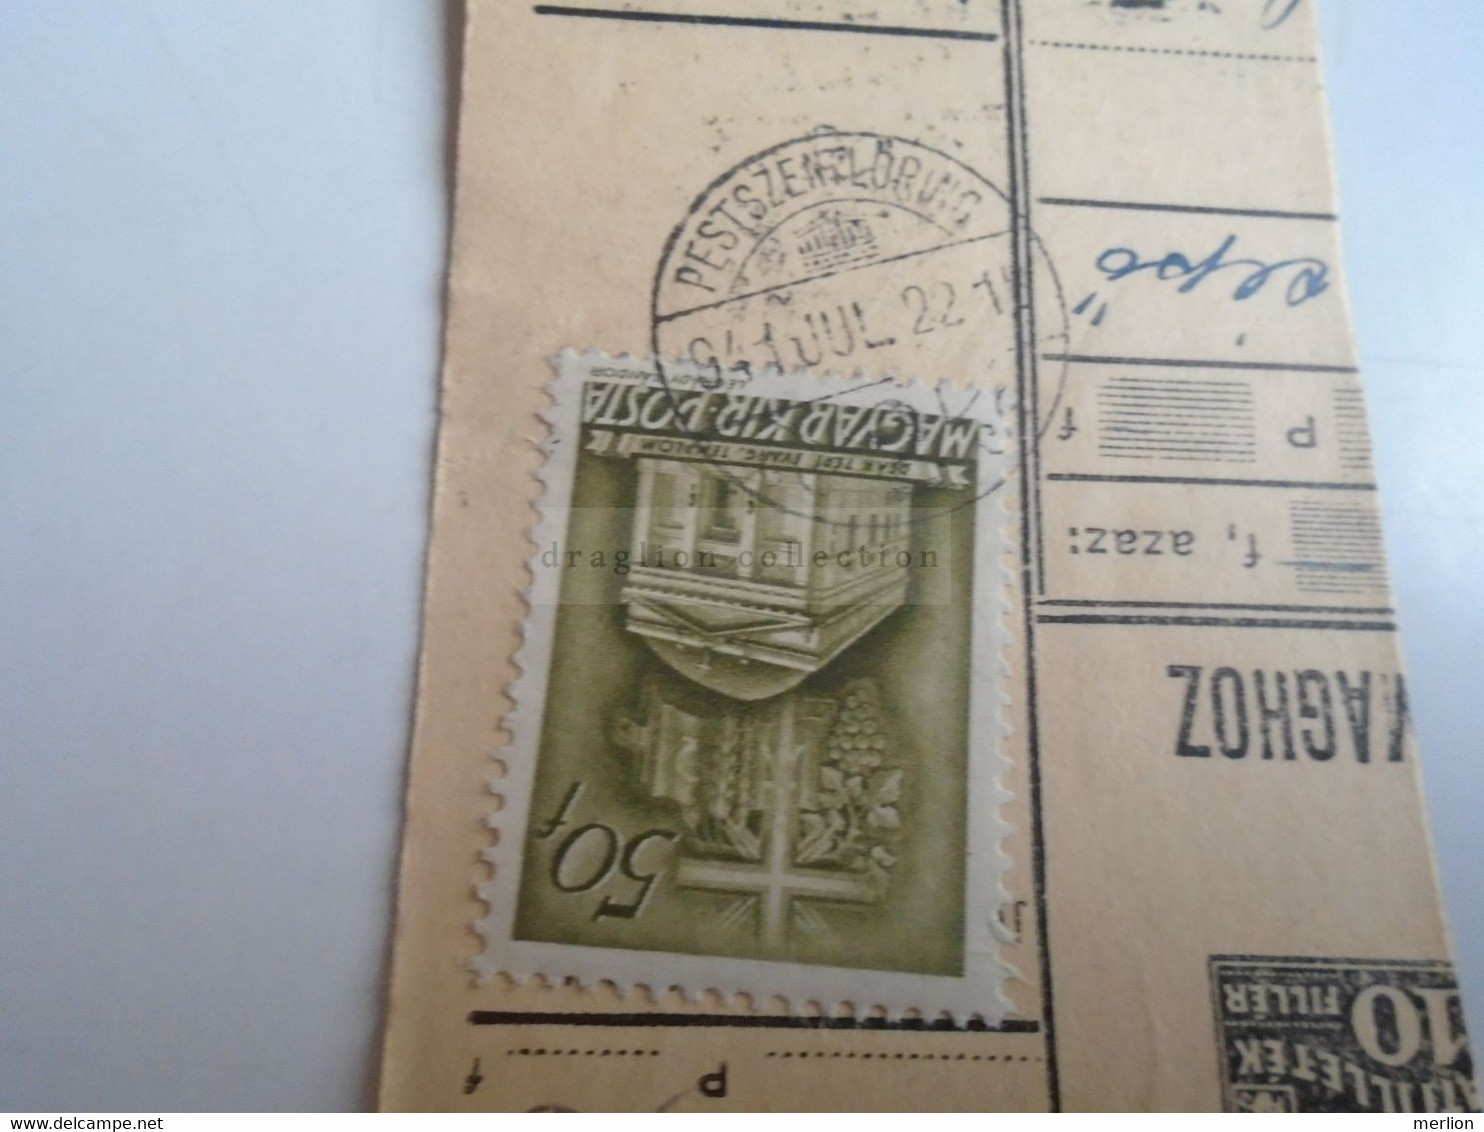 D187439   Parcel Card  (cut) Hungary 1941 Pestszentlőrinc  -Kapuvár - Paketmarken